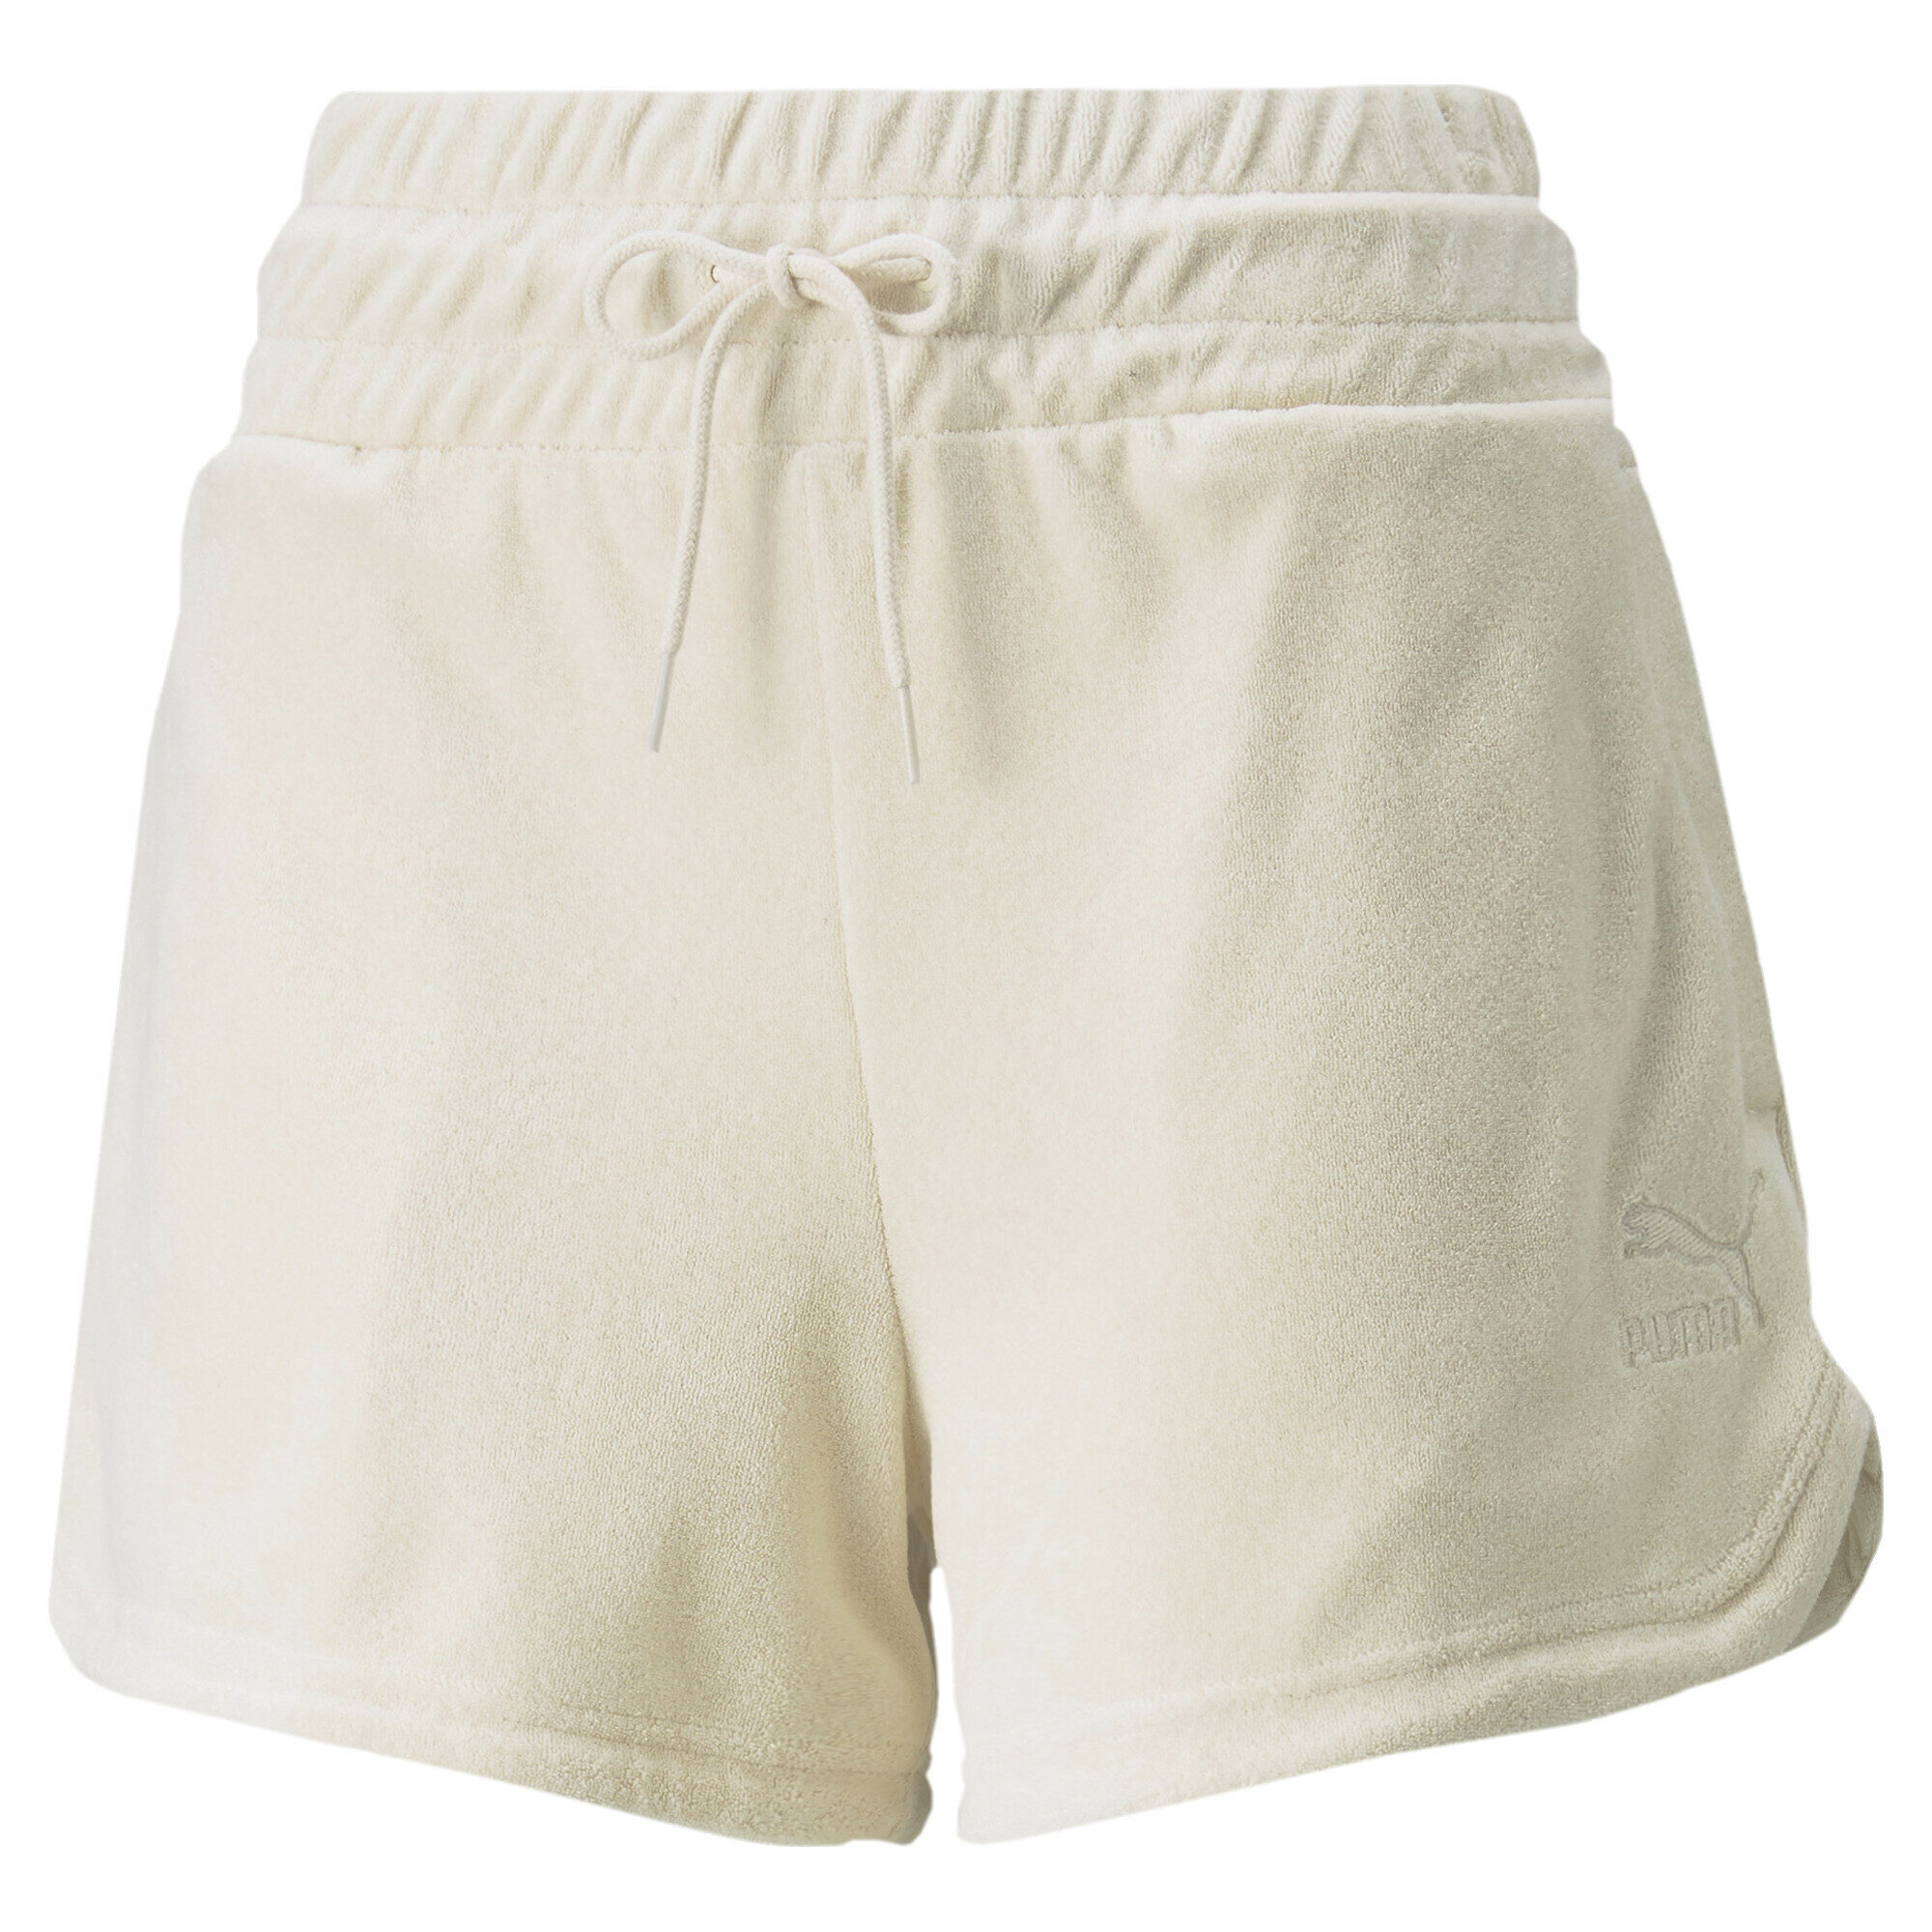 Шорты спортивные PUMA Classics Toweling Shorts